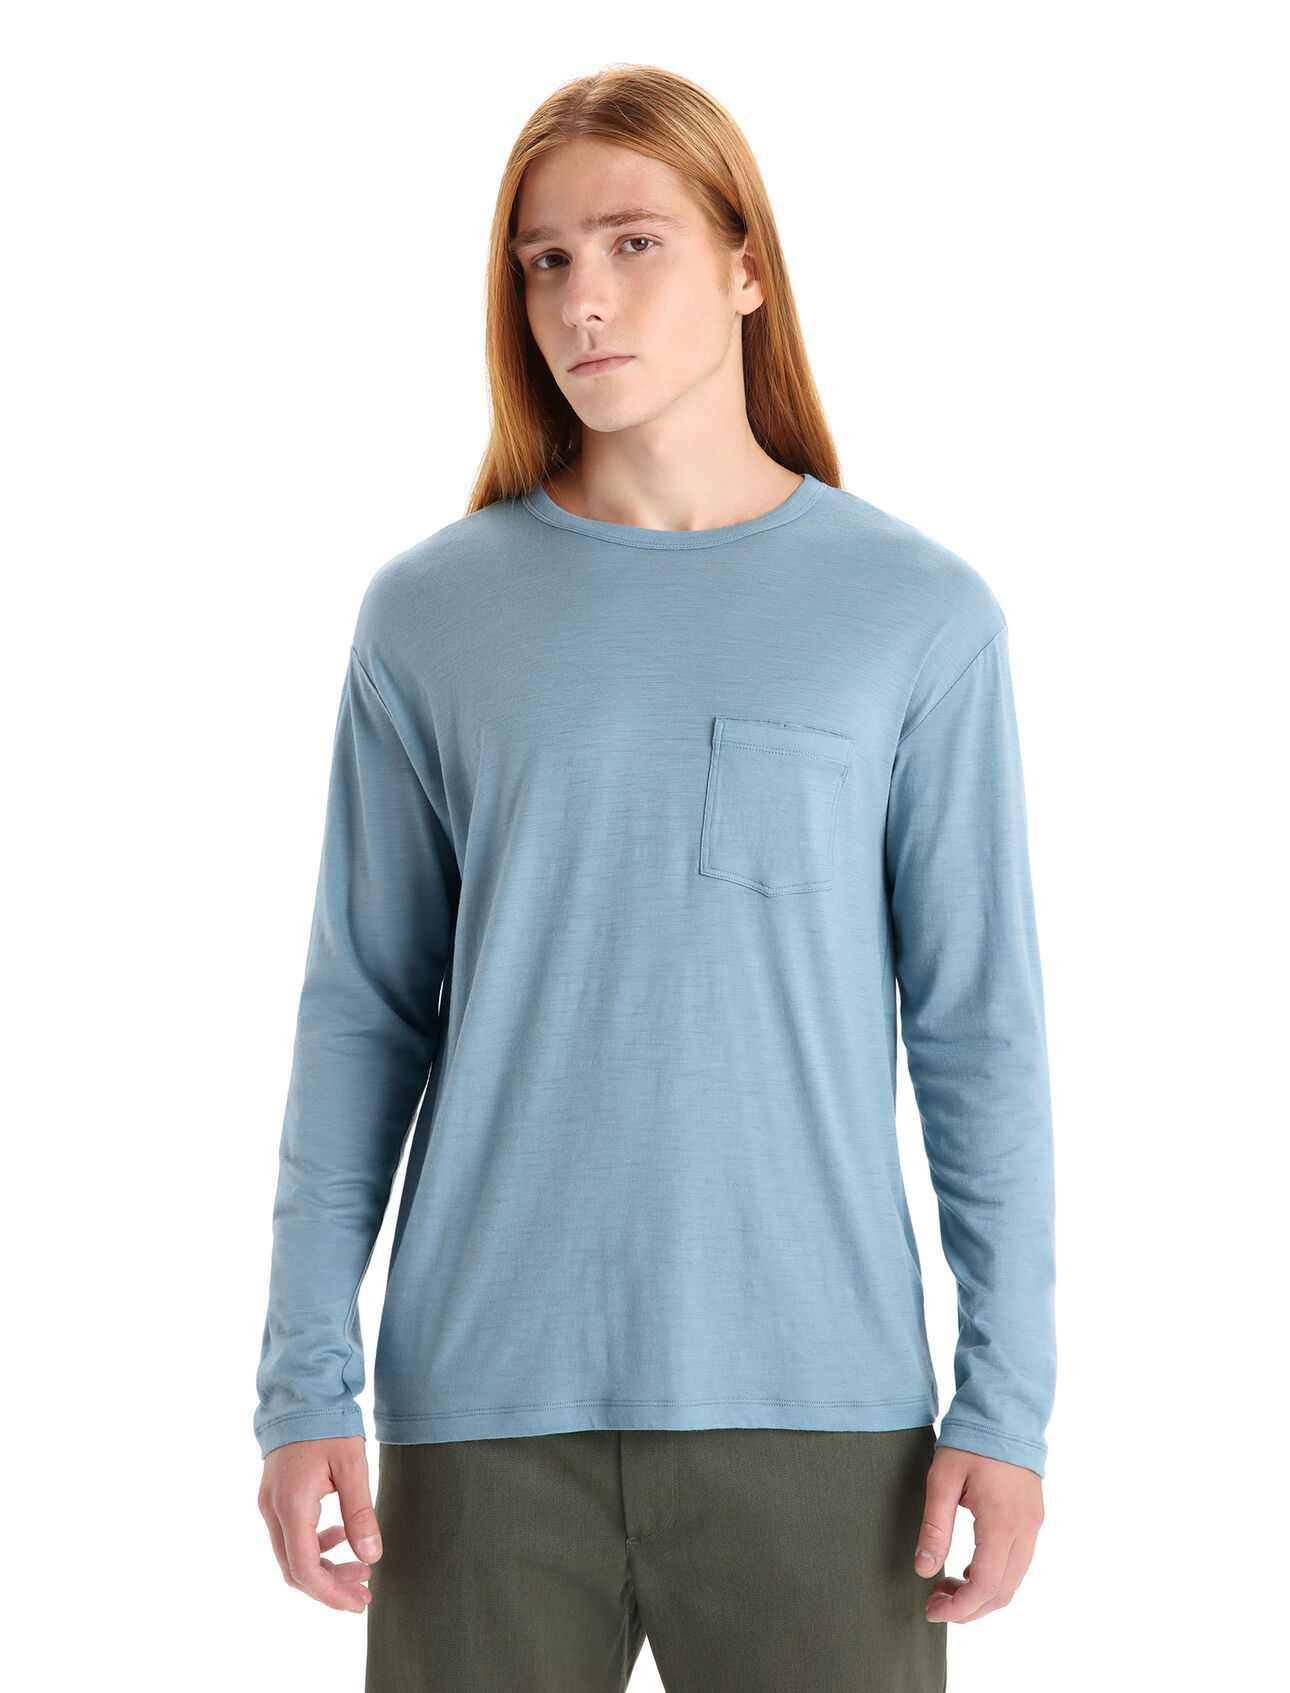 Herr Granary långärmad t-shirt i merino med ficka Granary långärmad t-shirt med ficka är en klassisk tröja med en avslappnad passform och mjuk, ventilerande 100% merinoull. Det är ett självklart plagg för vardaglig komfort och stil. 